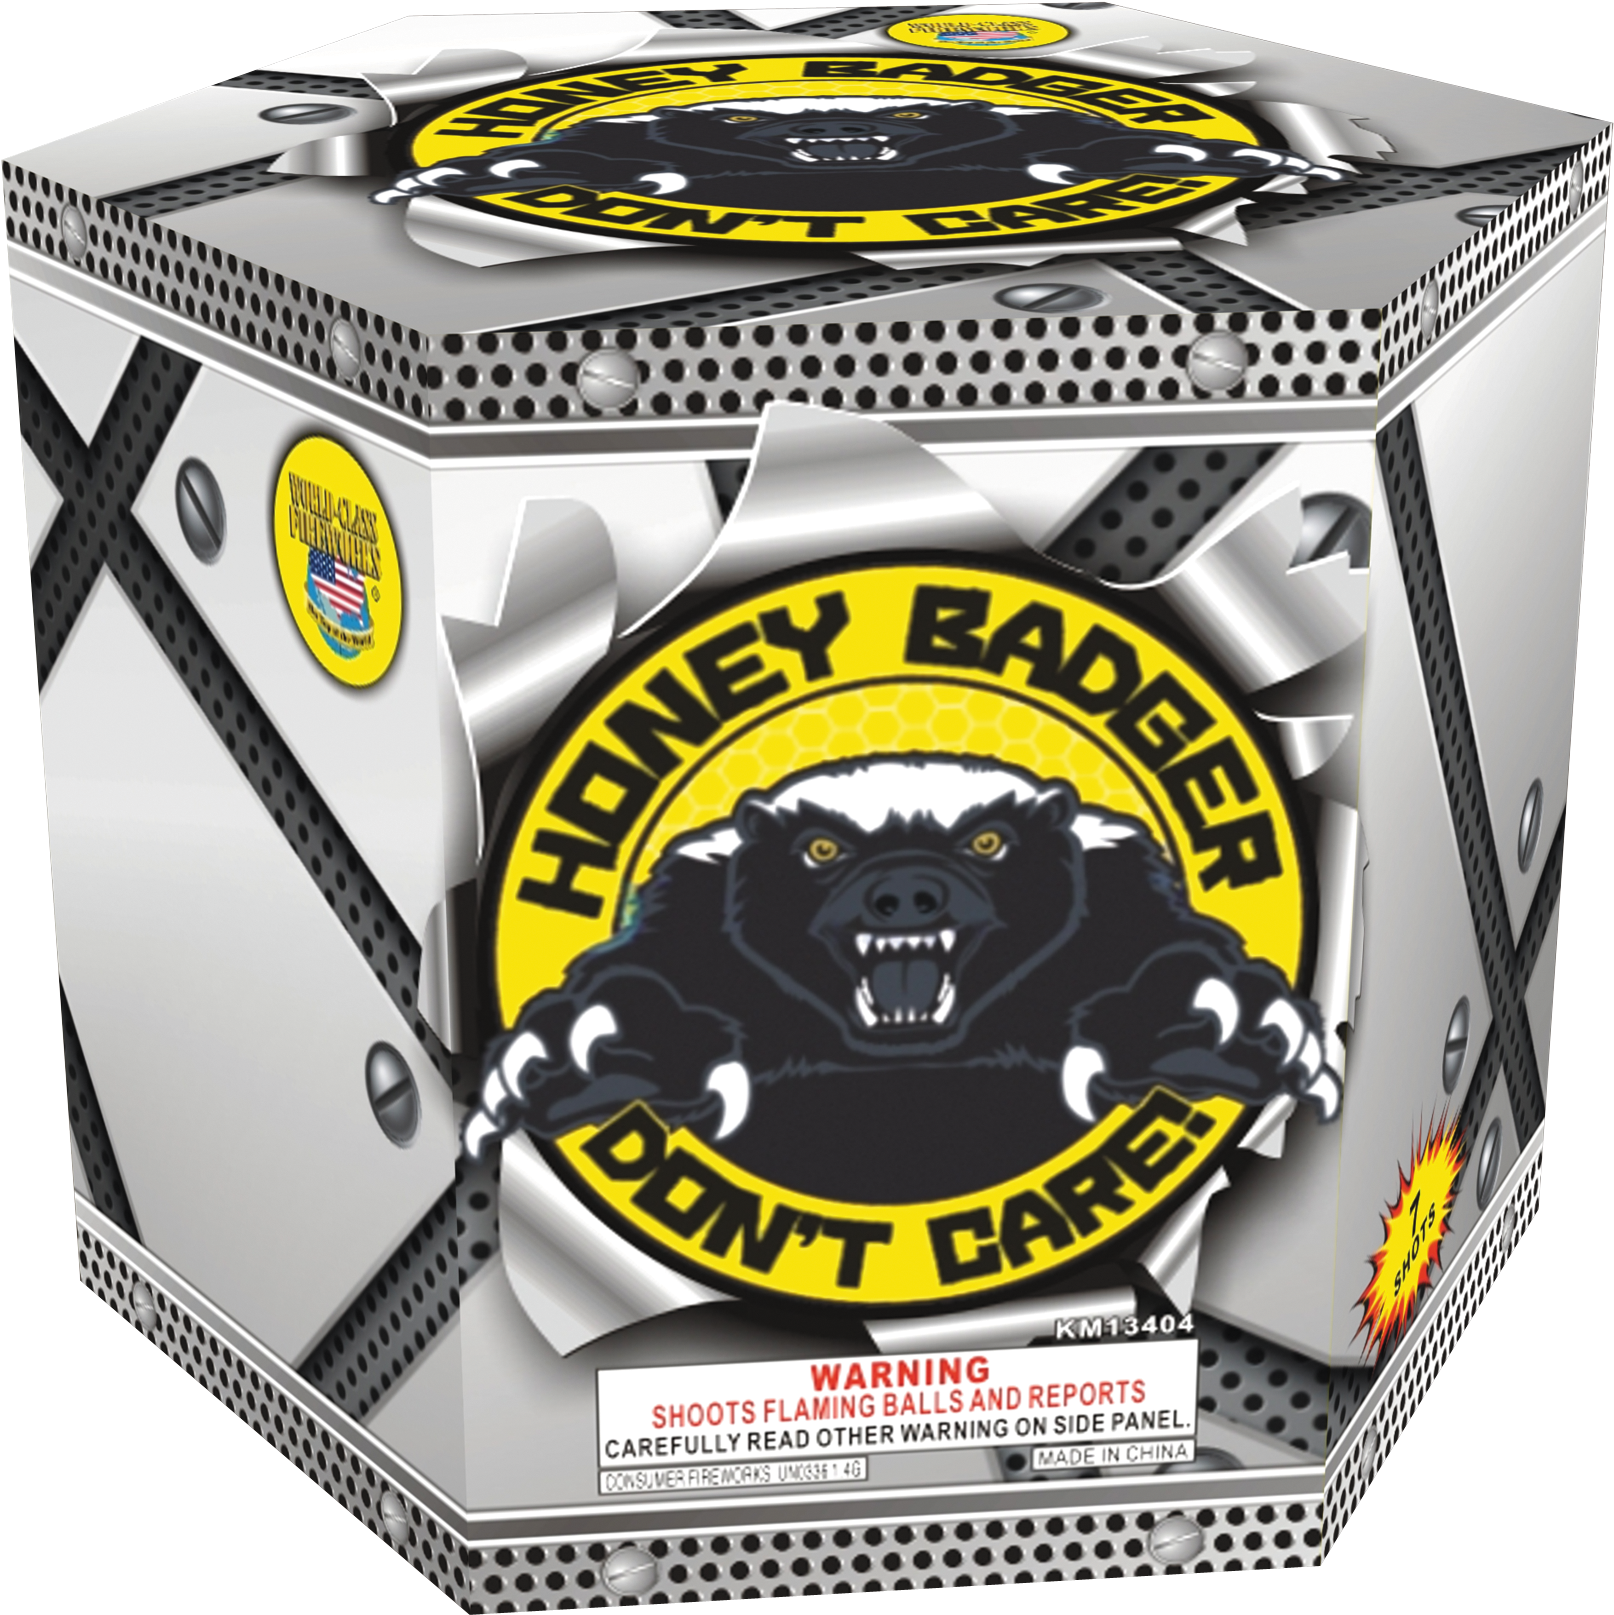 Honey Badger Fireworks Packaging PNG image